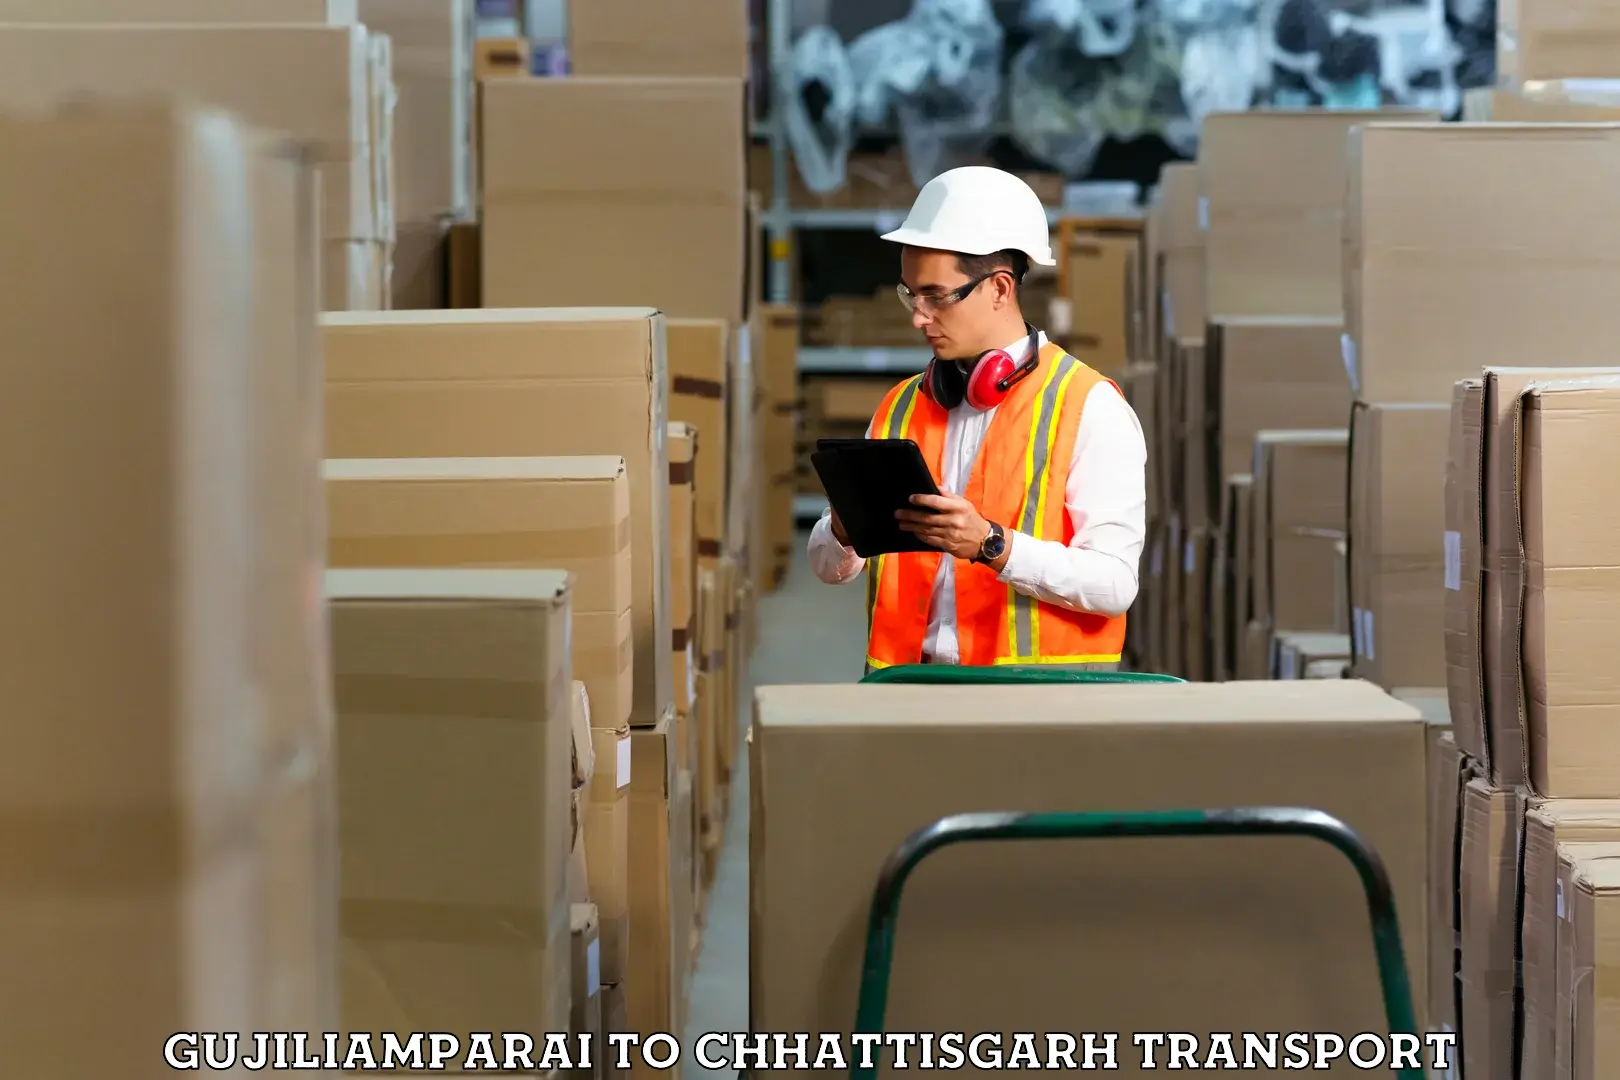 Goods delivery service Gujiliamparai to Bijapur Chhattisgarh